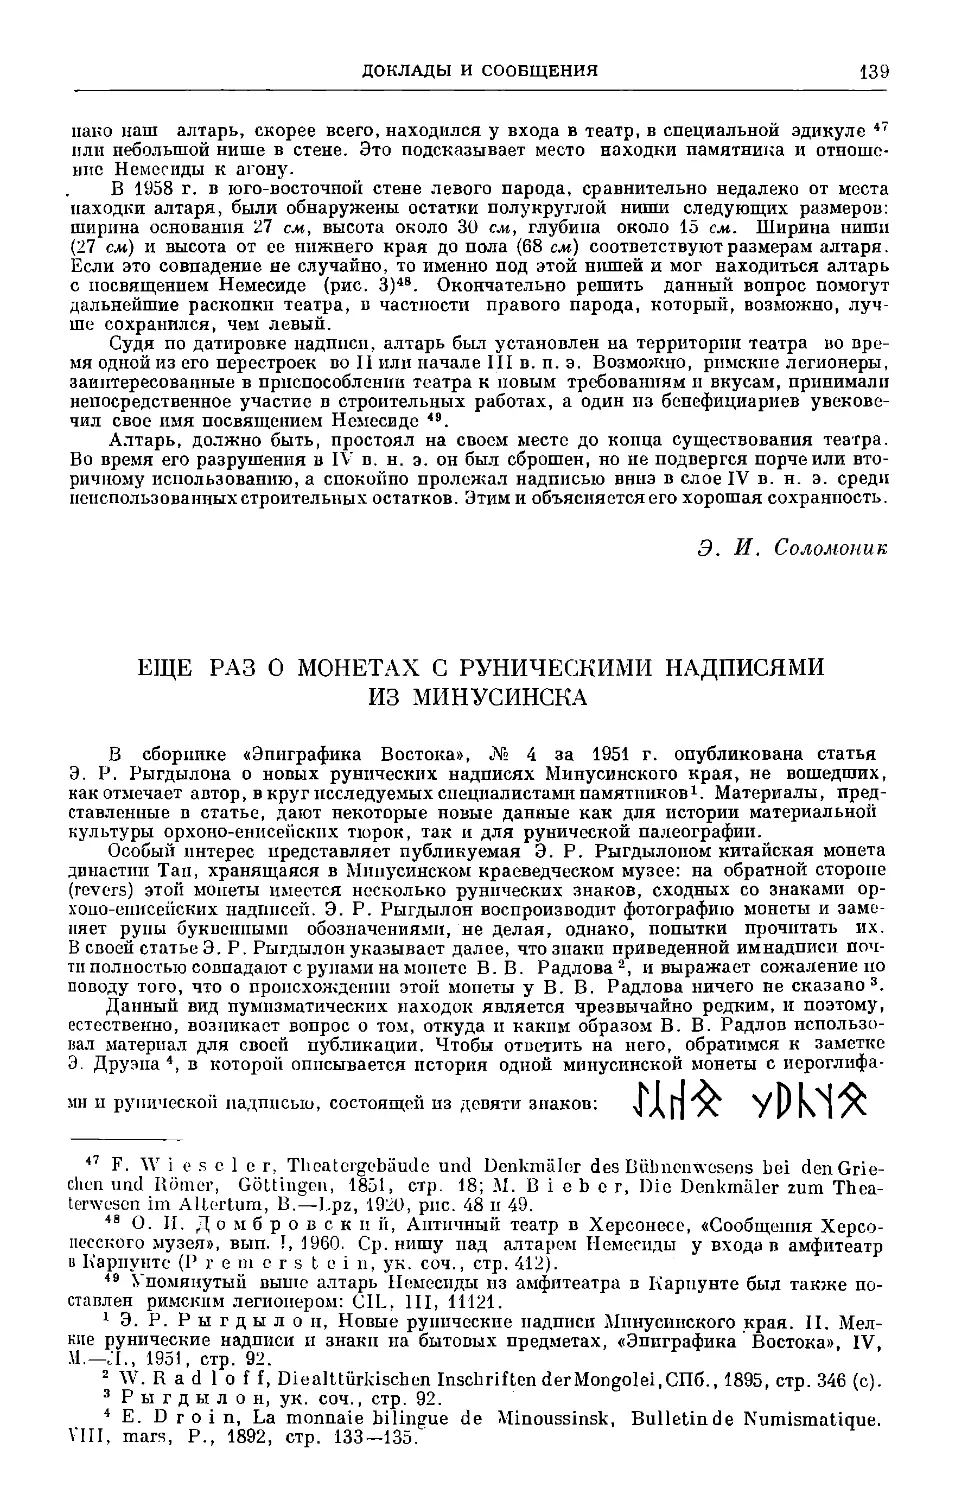 А. М. Щербак — Ещё раз о монетах с руническими надписями из Минусинска